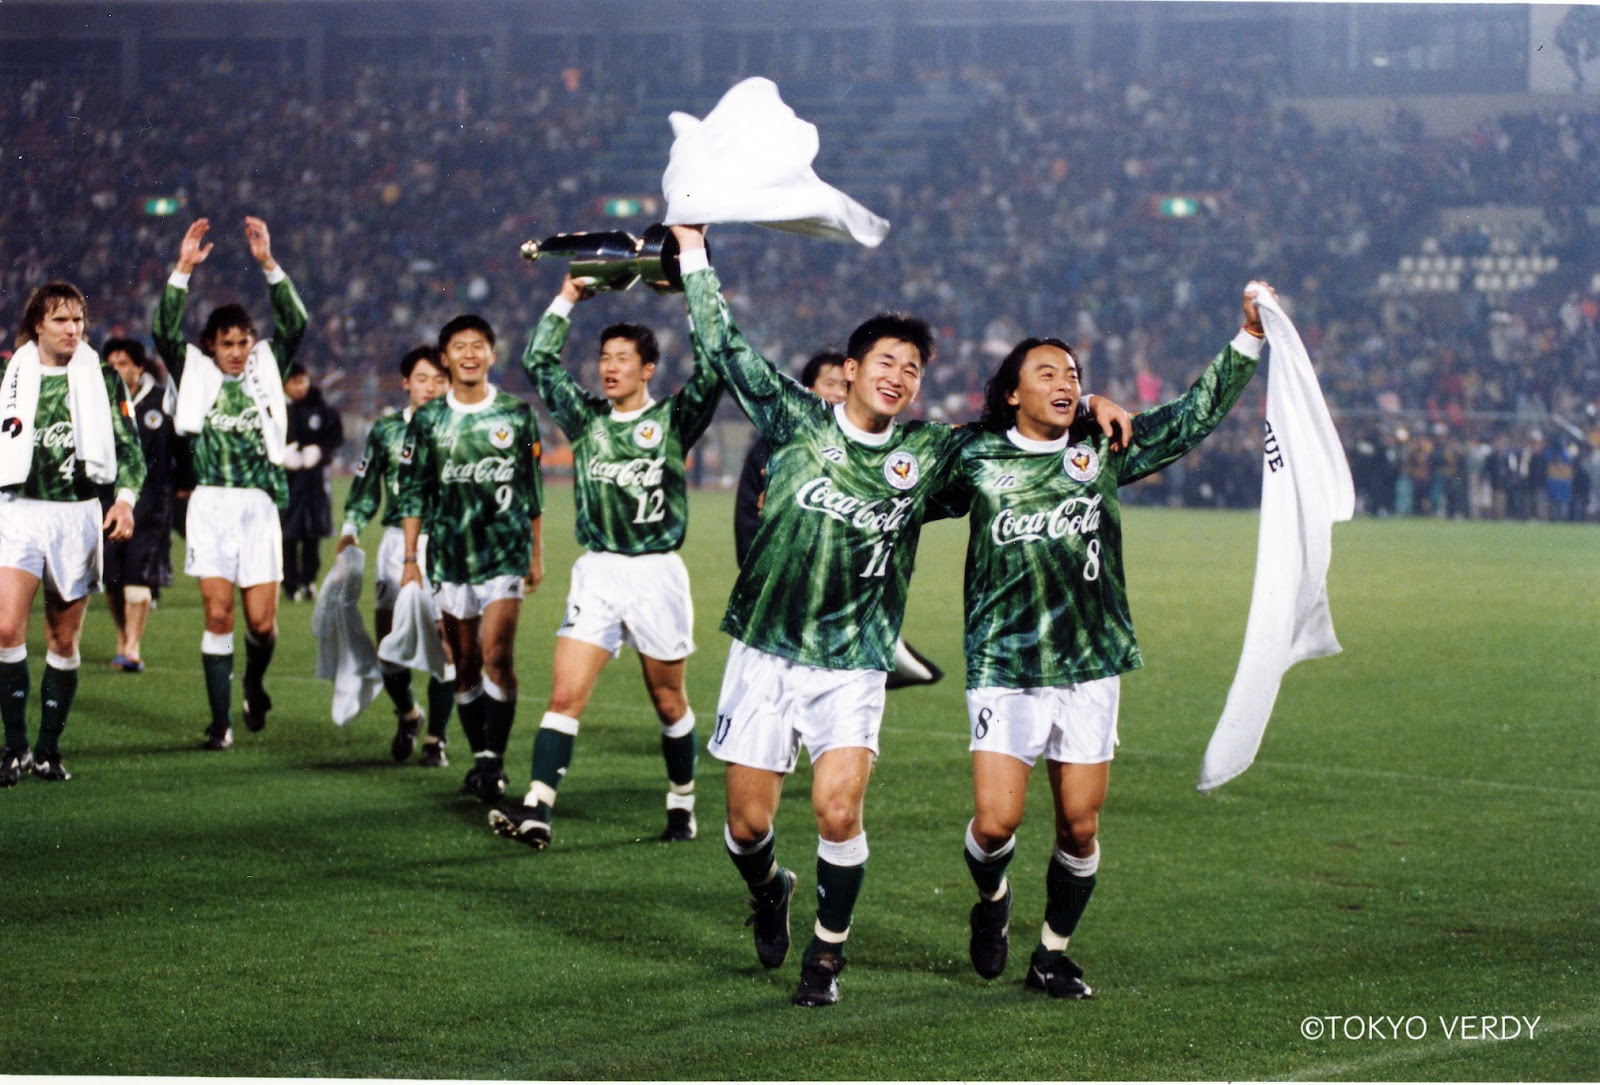 1993 04 Jリーグ開幕 ヴェルディ黄金期へ 今こそ 最高の舞台に返り咲く 緑のハートが繋ぐ軌跡を一冊に 東京ヴェルディ 18 11 16 投稿 クラウドファンディング Readyfor